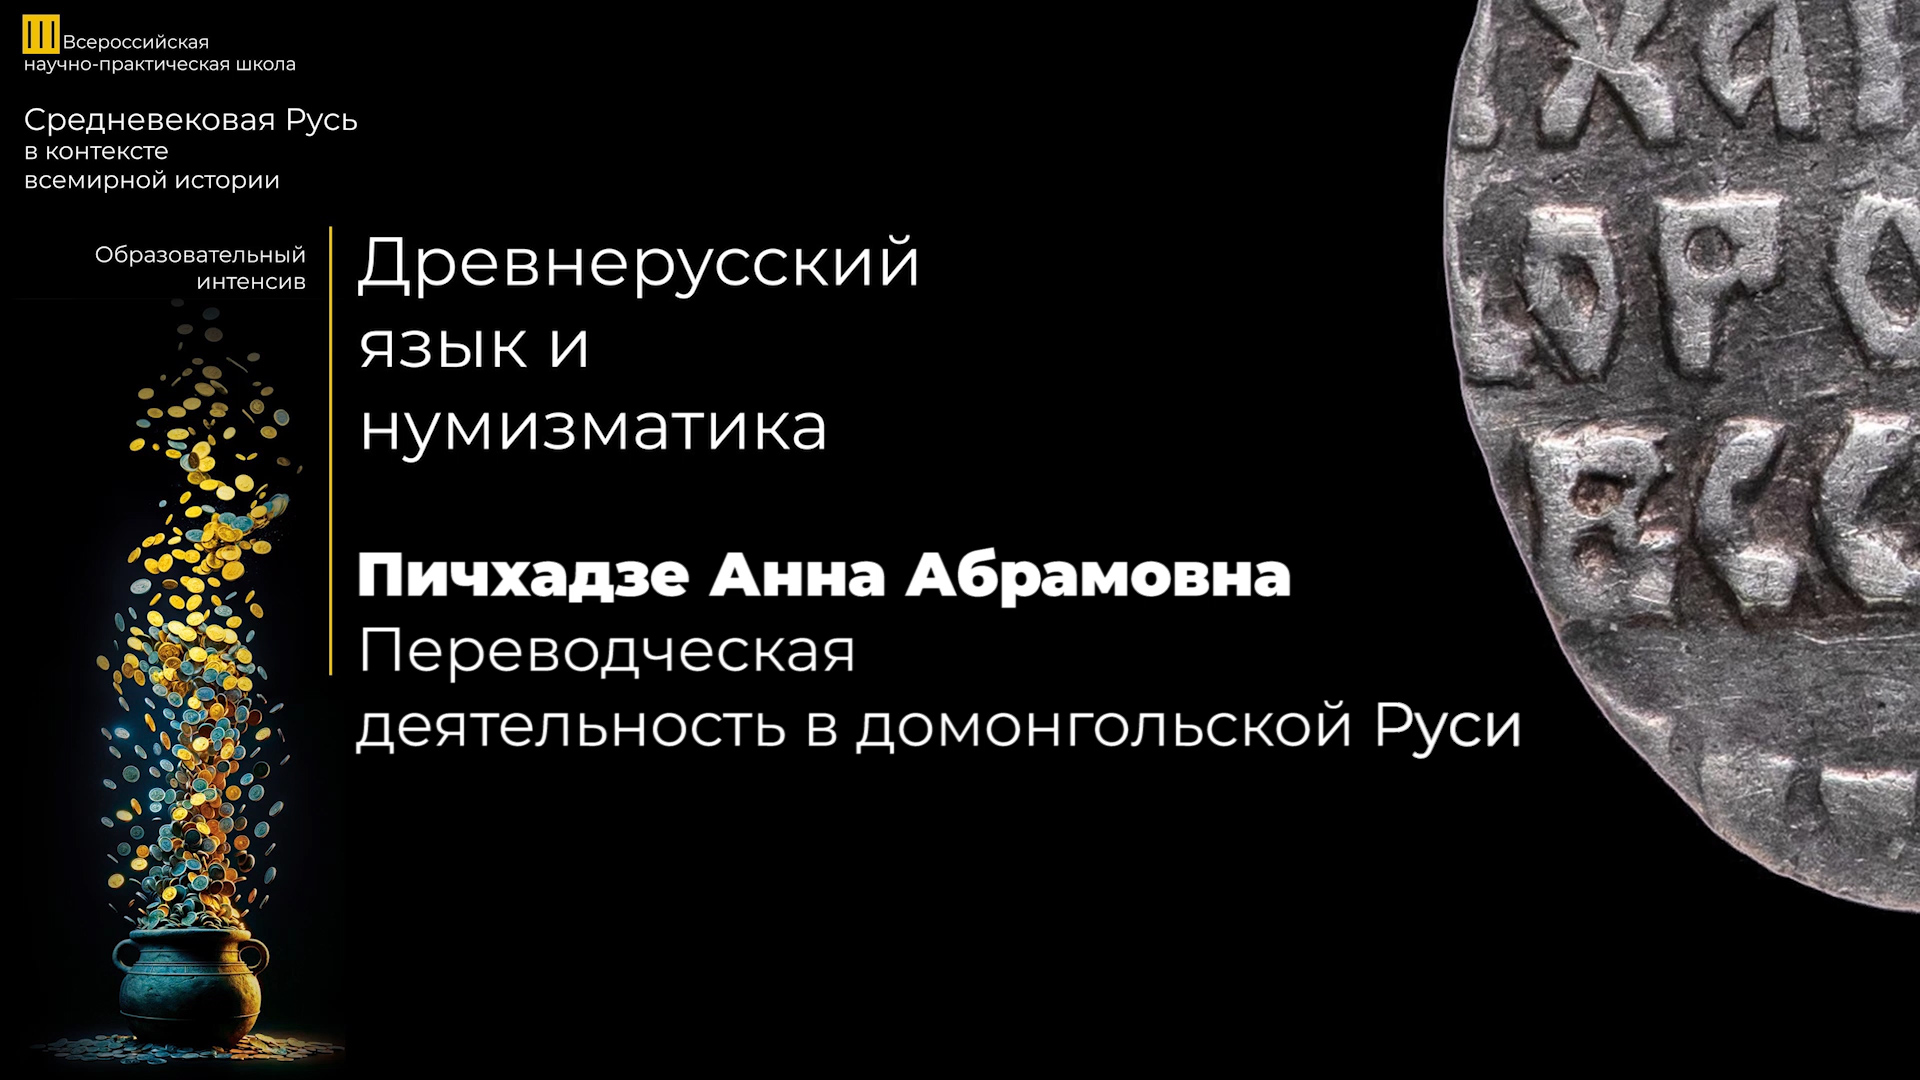 Переводческая деятельность в домонгольской Руси – Пичхадзе Анна Абрамовна